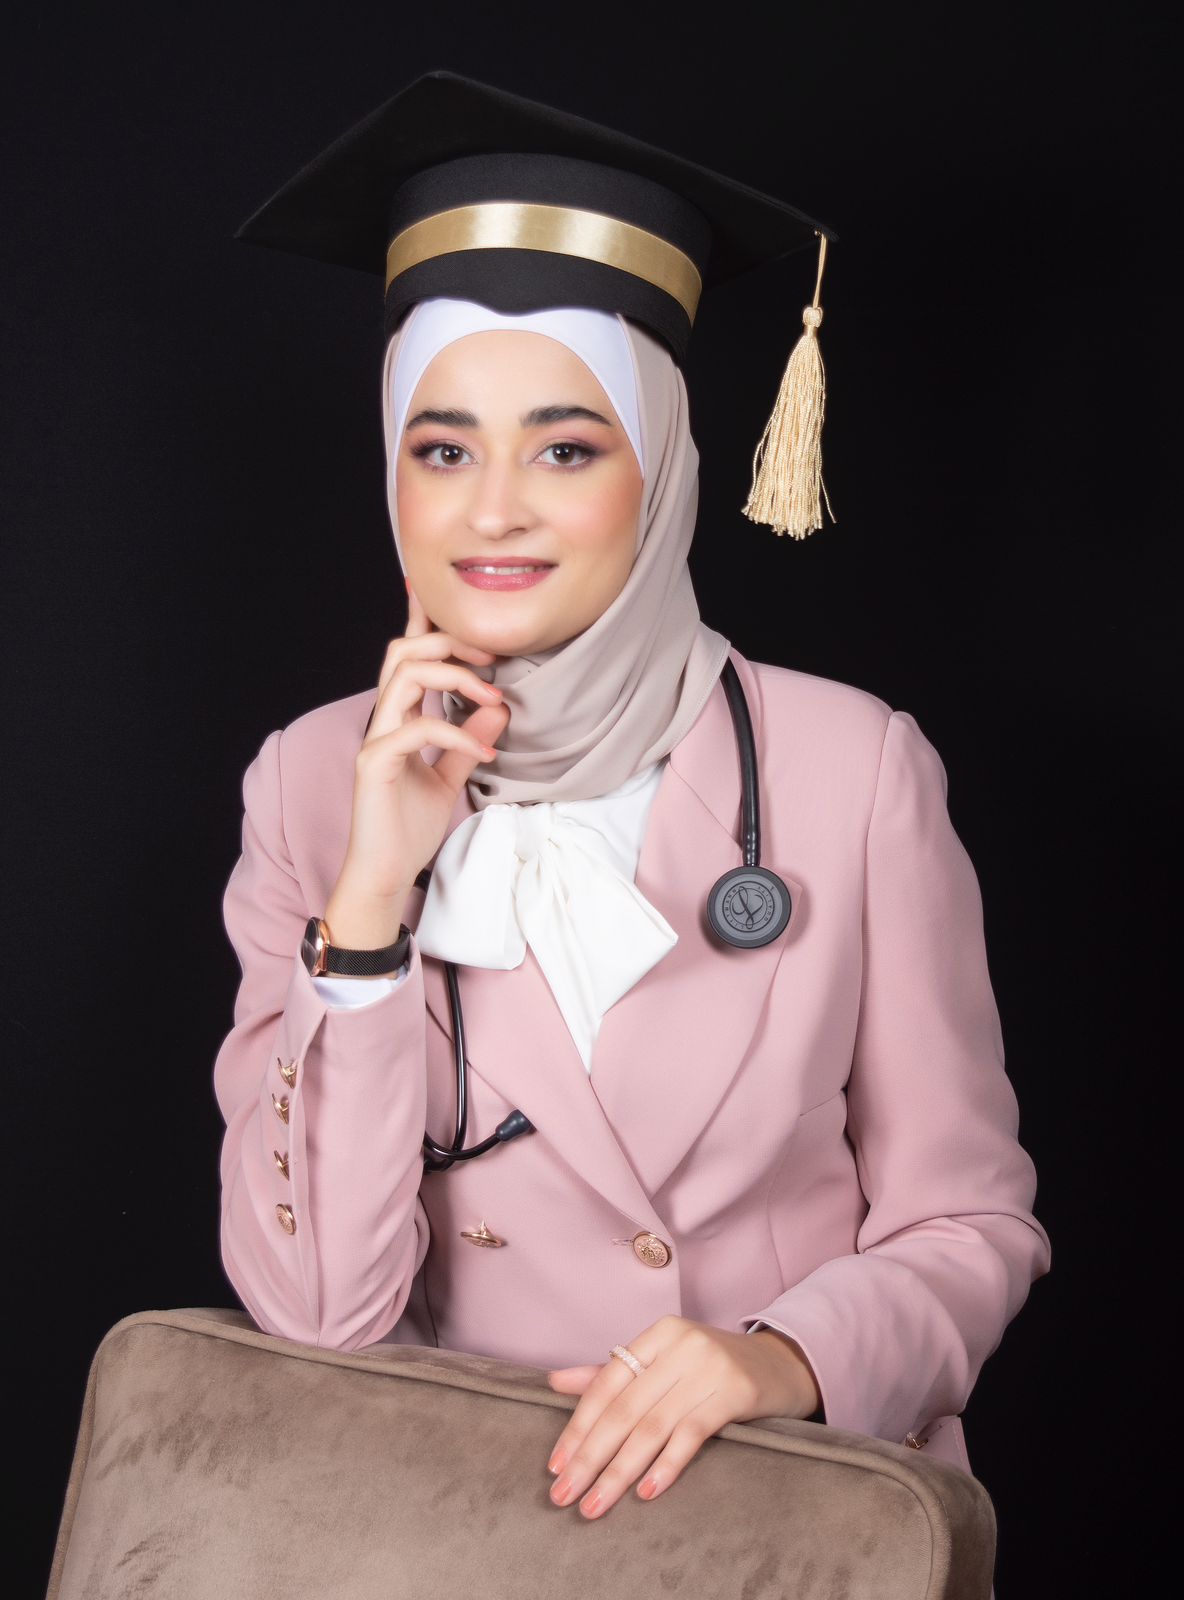 الف مبروك دكتورتنا الحنونة الدكتورة راما عمر الحواري